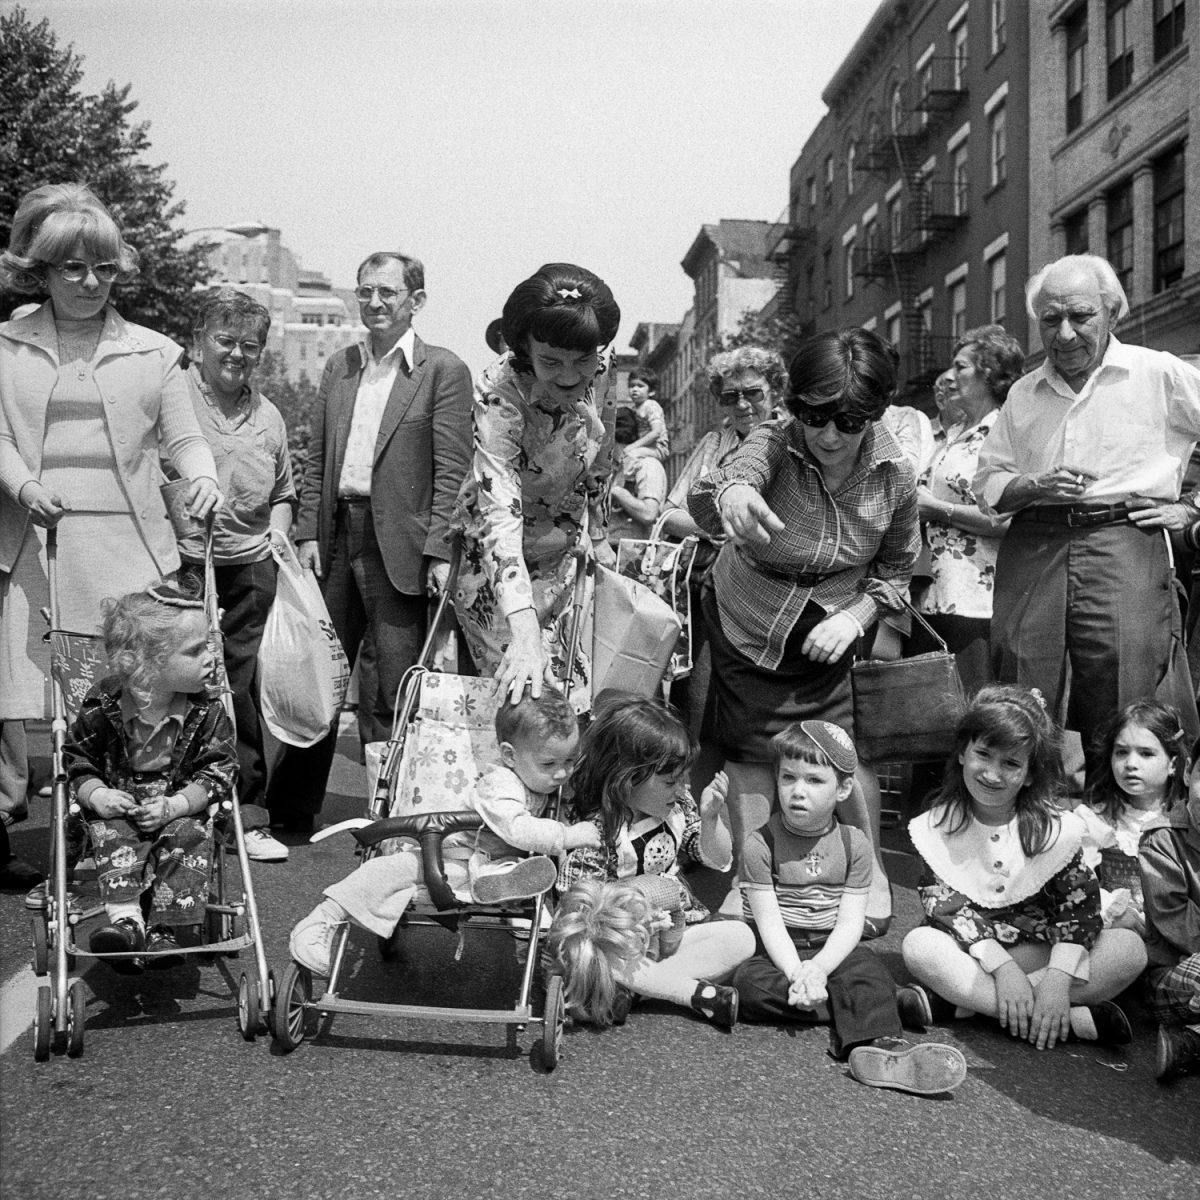 Lower East Side Street Festival, New York - June 1978